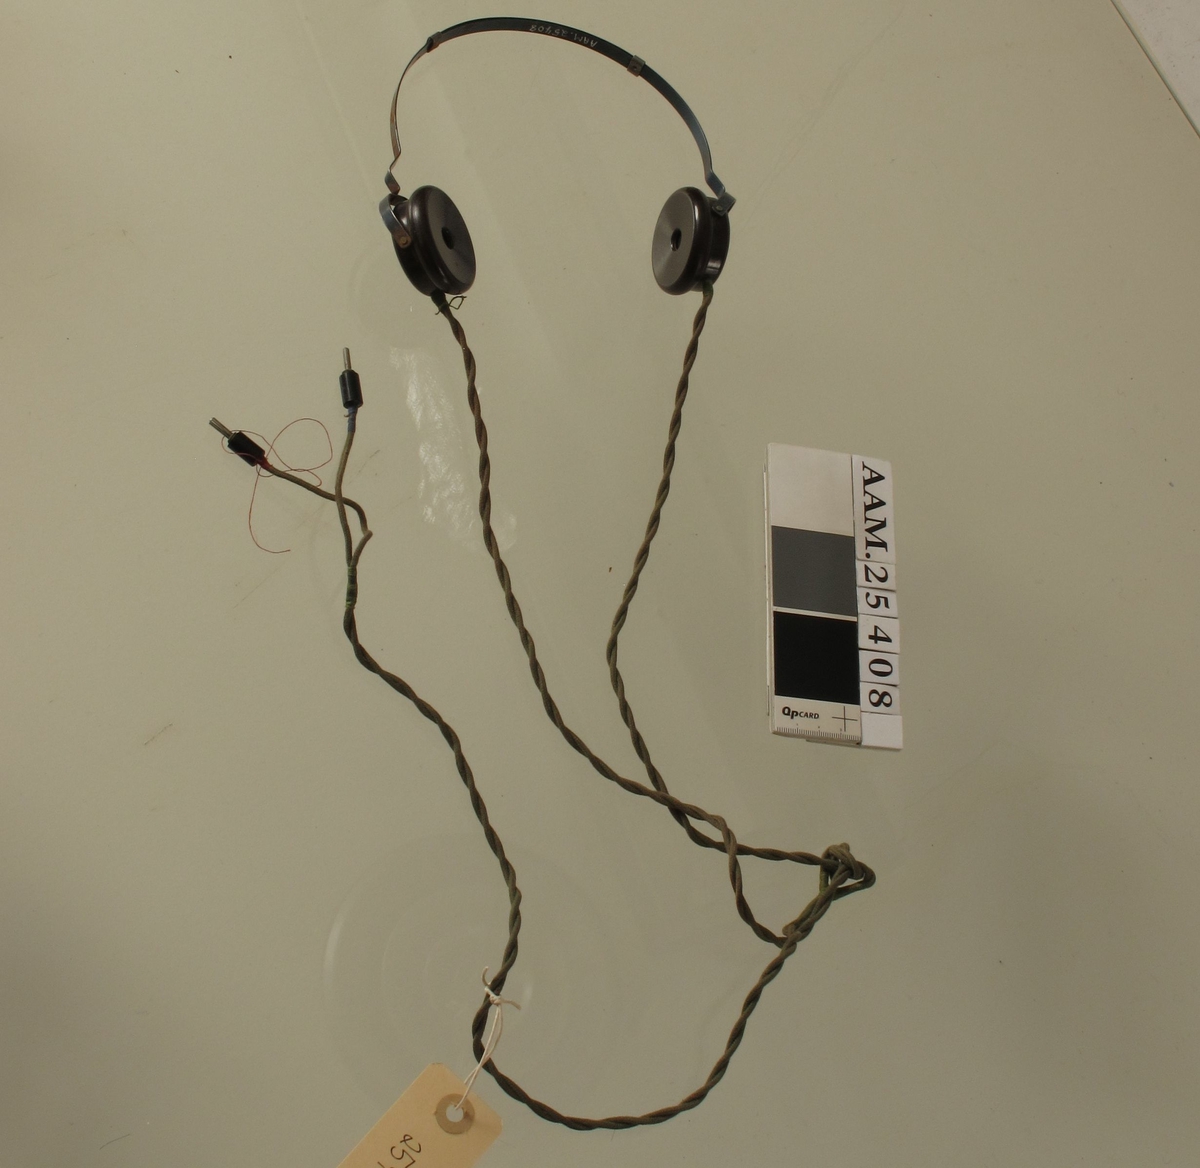 To runde øretelefoner montert på bøyle, ledning. Hørte til radio som ble brukt til illegal lytting av "gutta på skauen" når de lå og ventet på slipp.